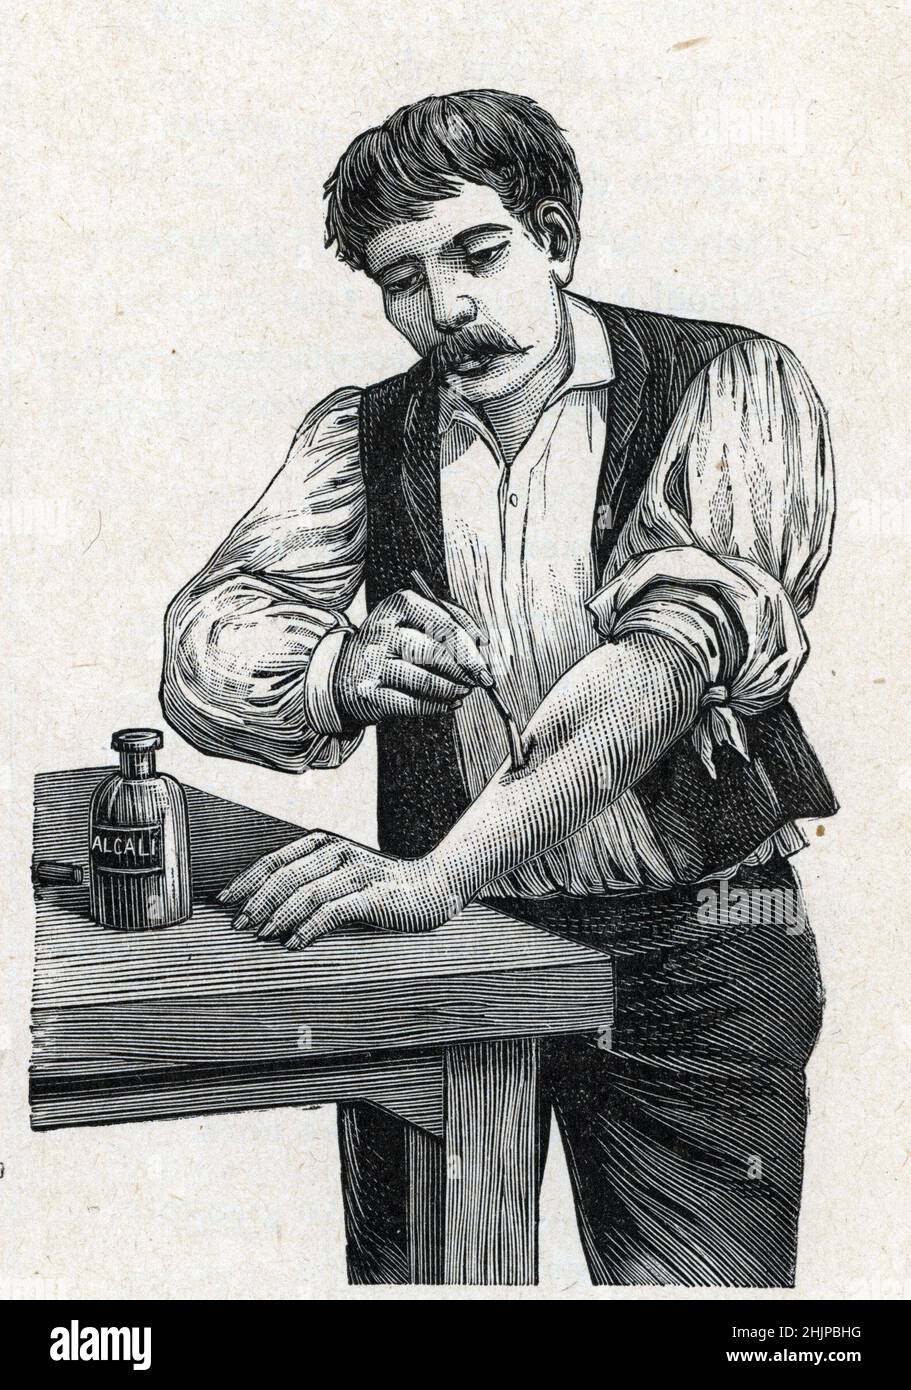 Représentation d'une cautérisation avec un produit chimique alcalin pour faire référence à une laie ou arrêter une hemorragie (cautérisation chimique (ou cautérisation, ou cautérisation) Gravure tiree de 'Medecine illustrae' 1888 Collection privee Banque D'Images